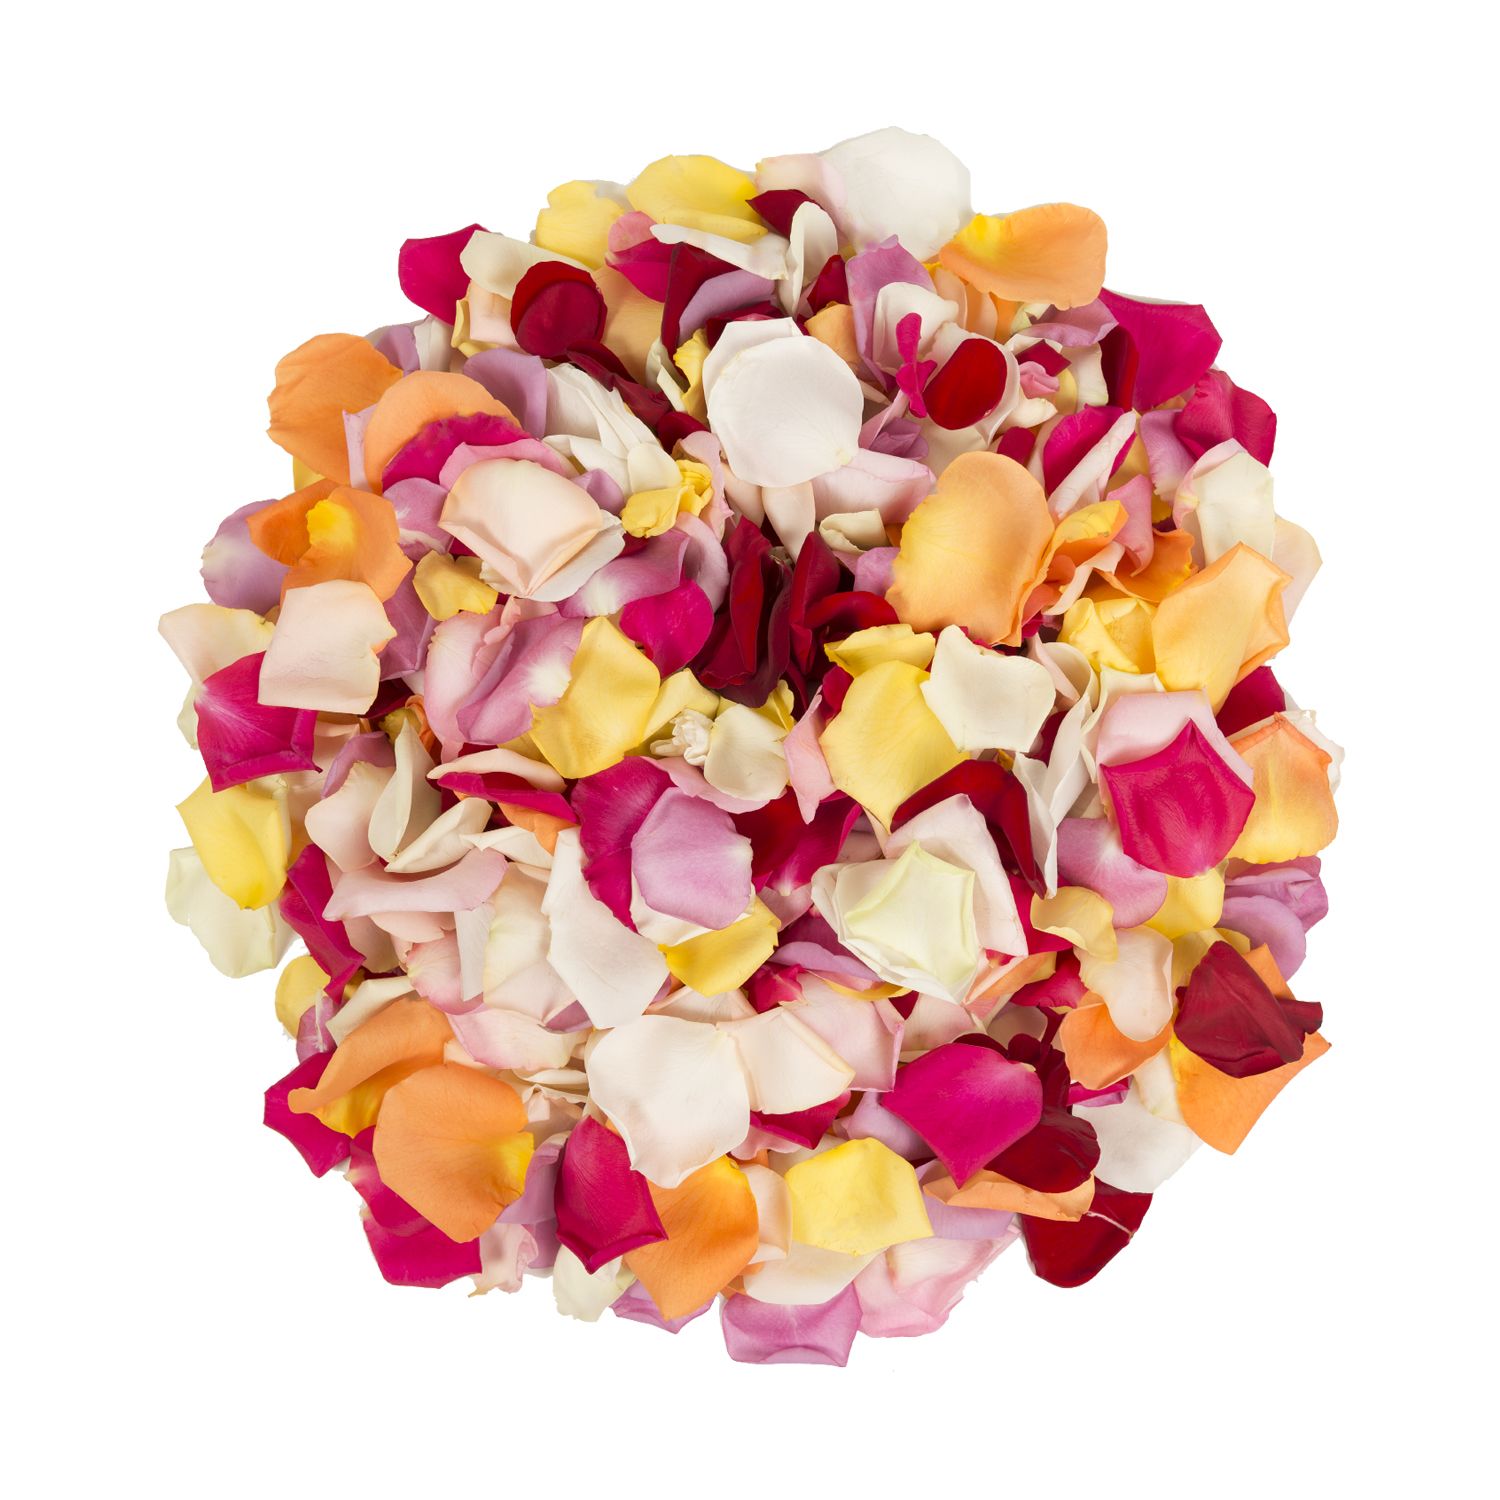 Box of Rose Petals Box of soft blush colors roses petals in Key West, FL -  Petals & Vines